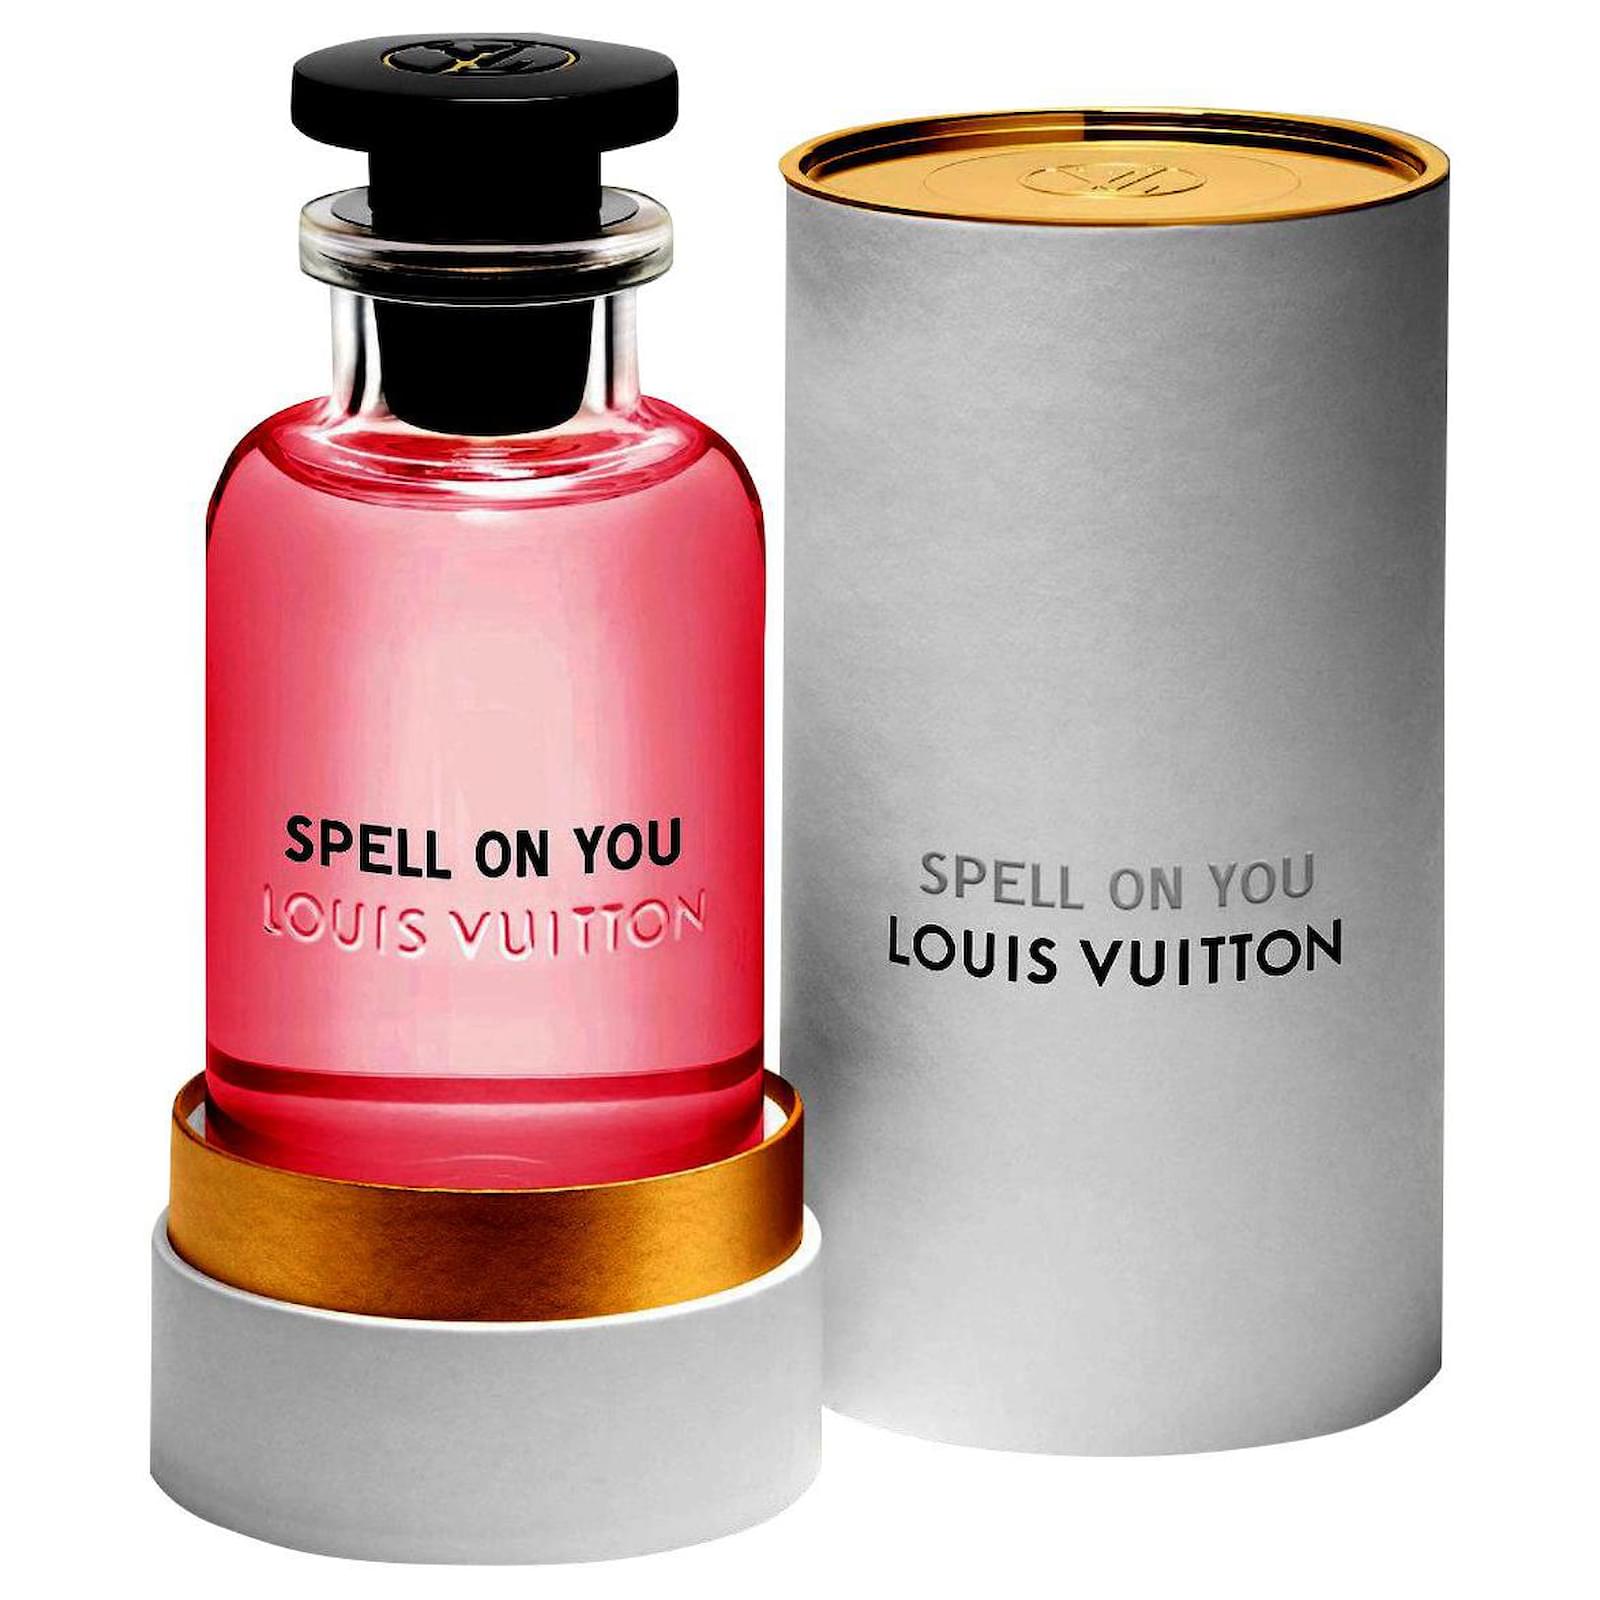 Méthéore di Louis Vuitton è il nuovo profumo che lascia la scia